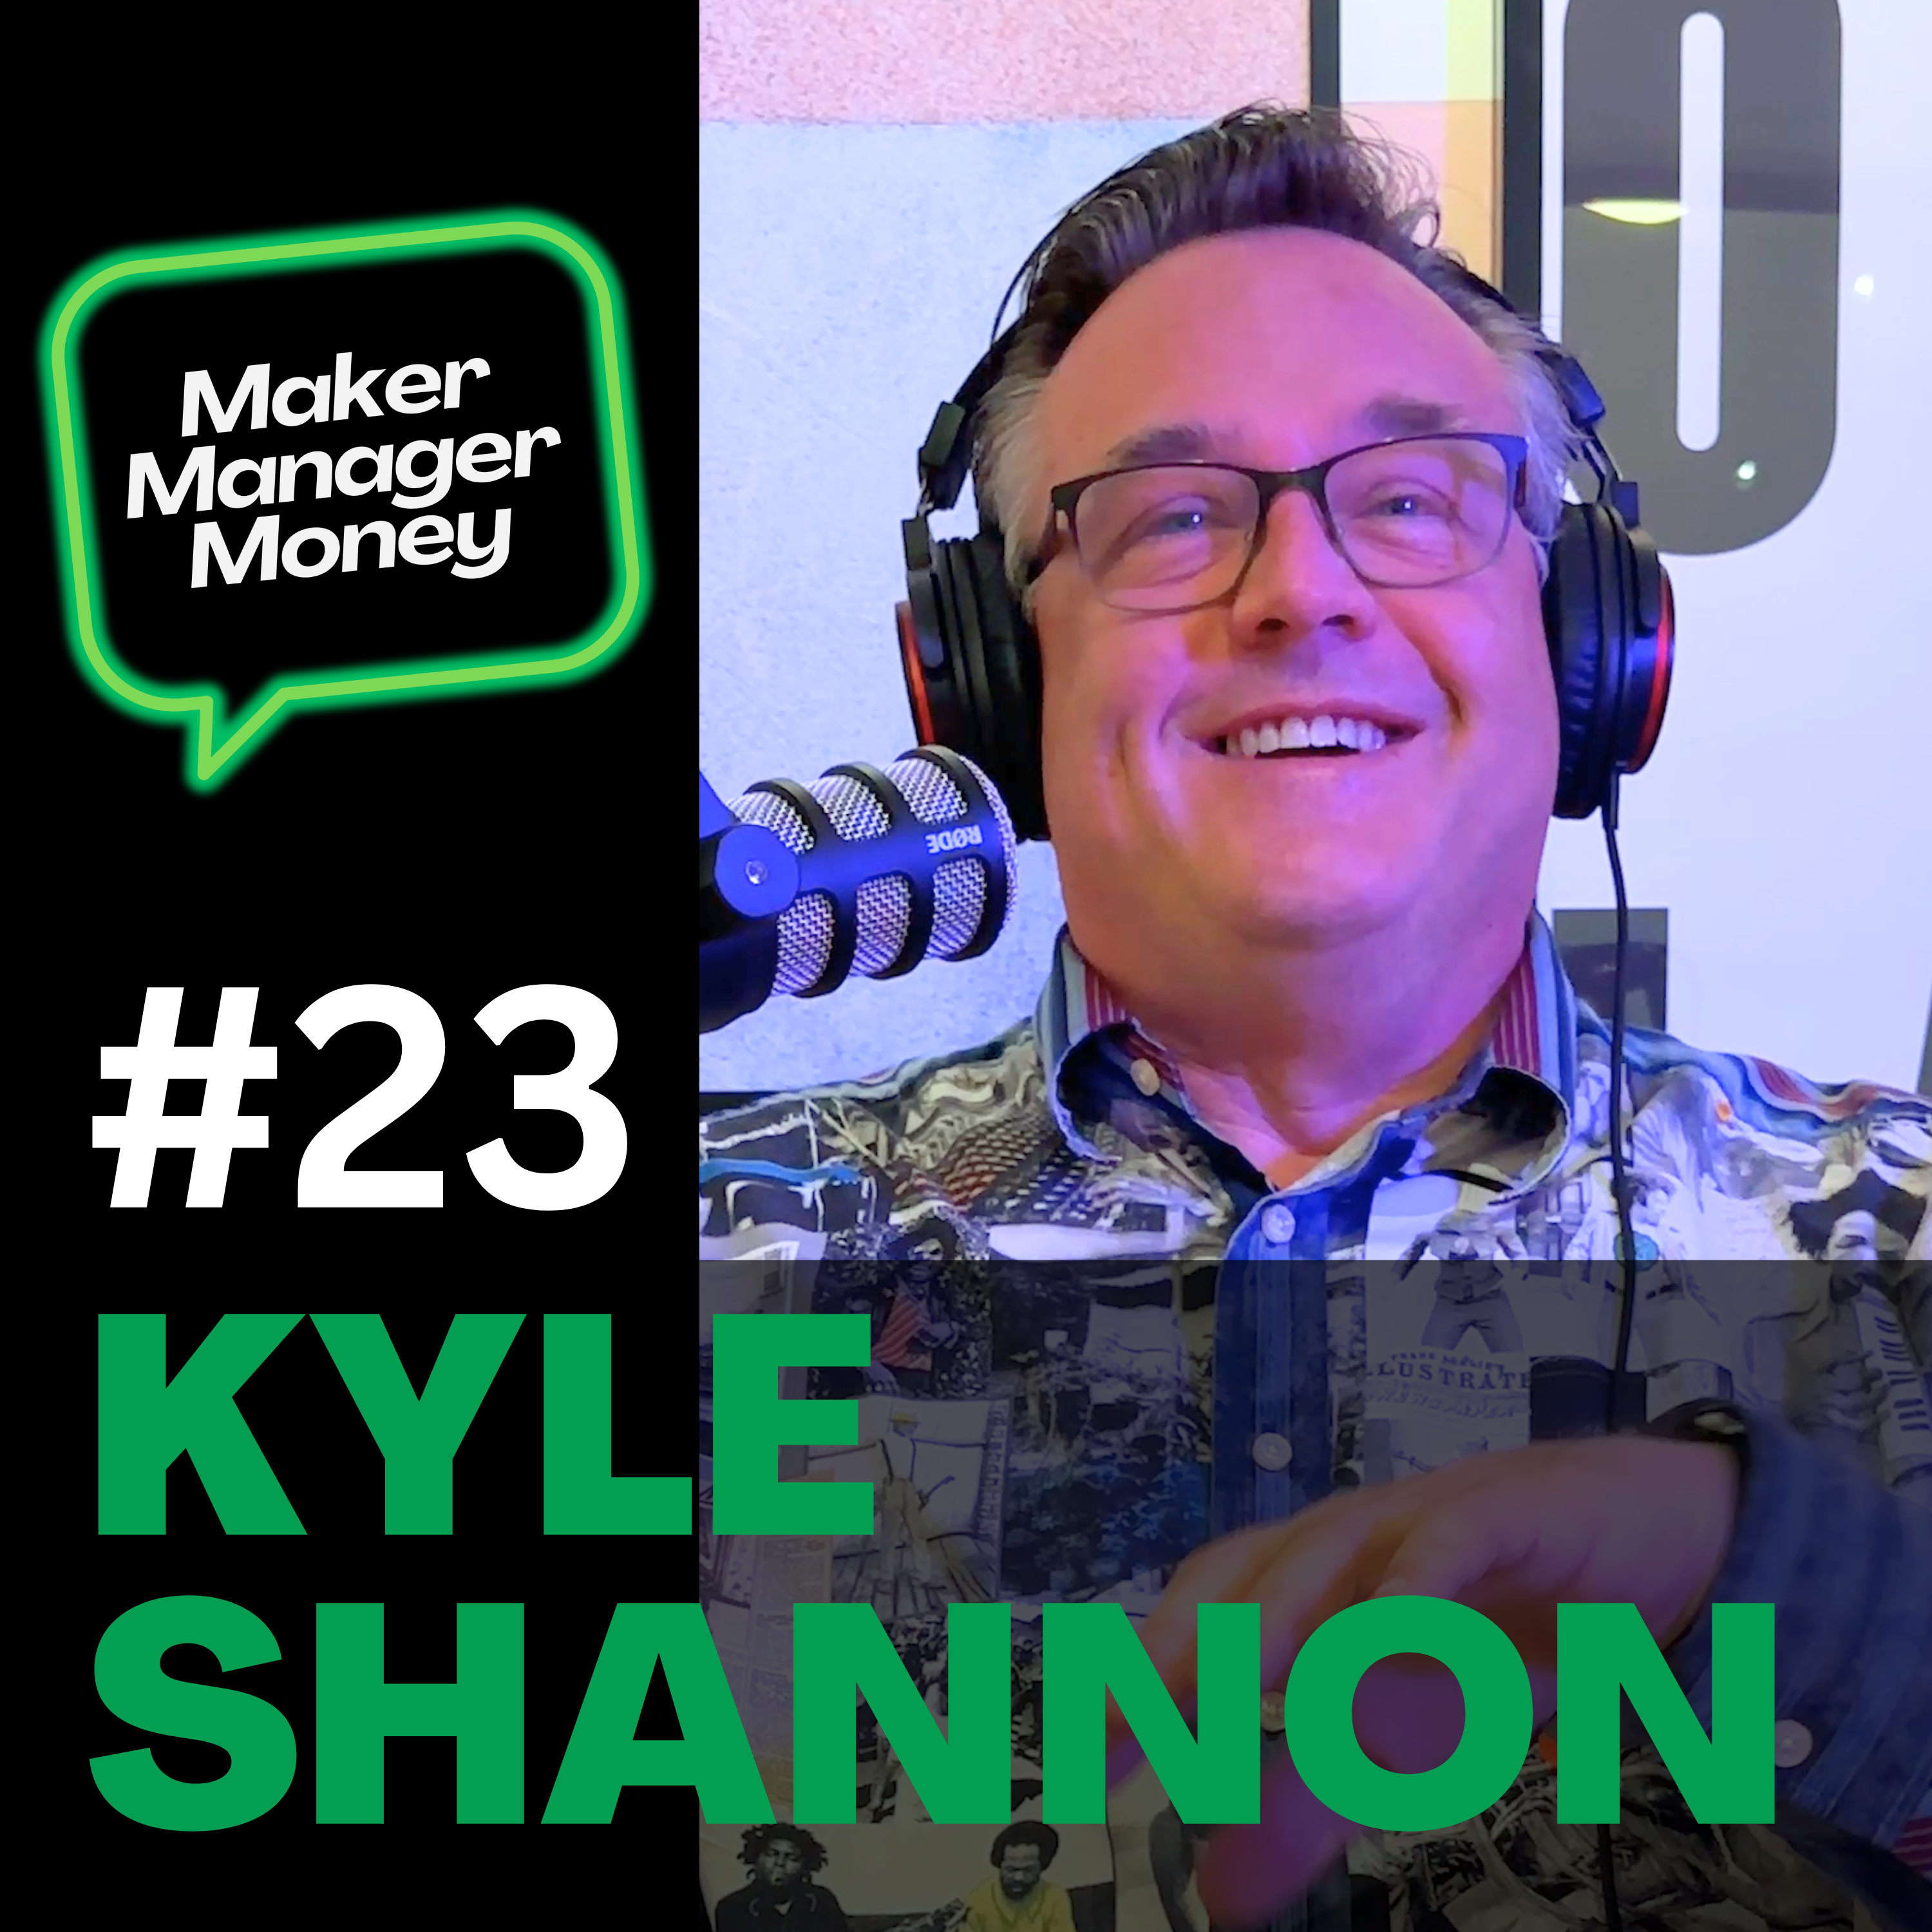 Kyle Shannon – founder, storyteller & AI evangelist